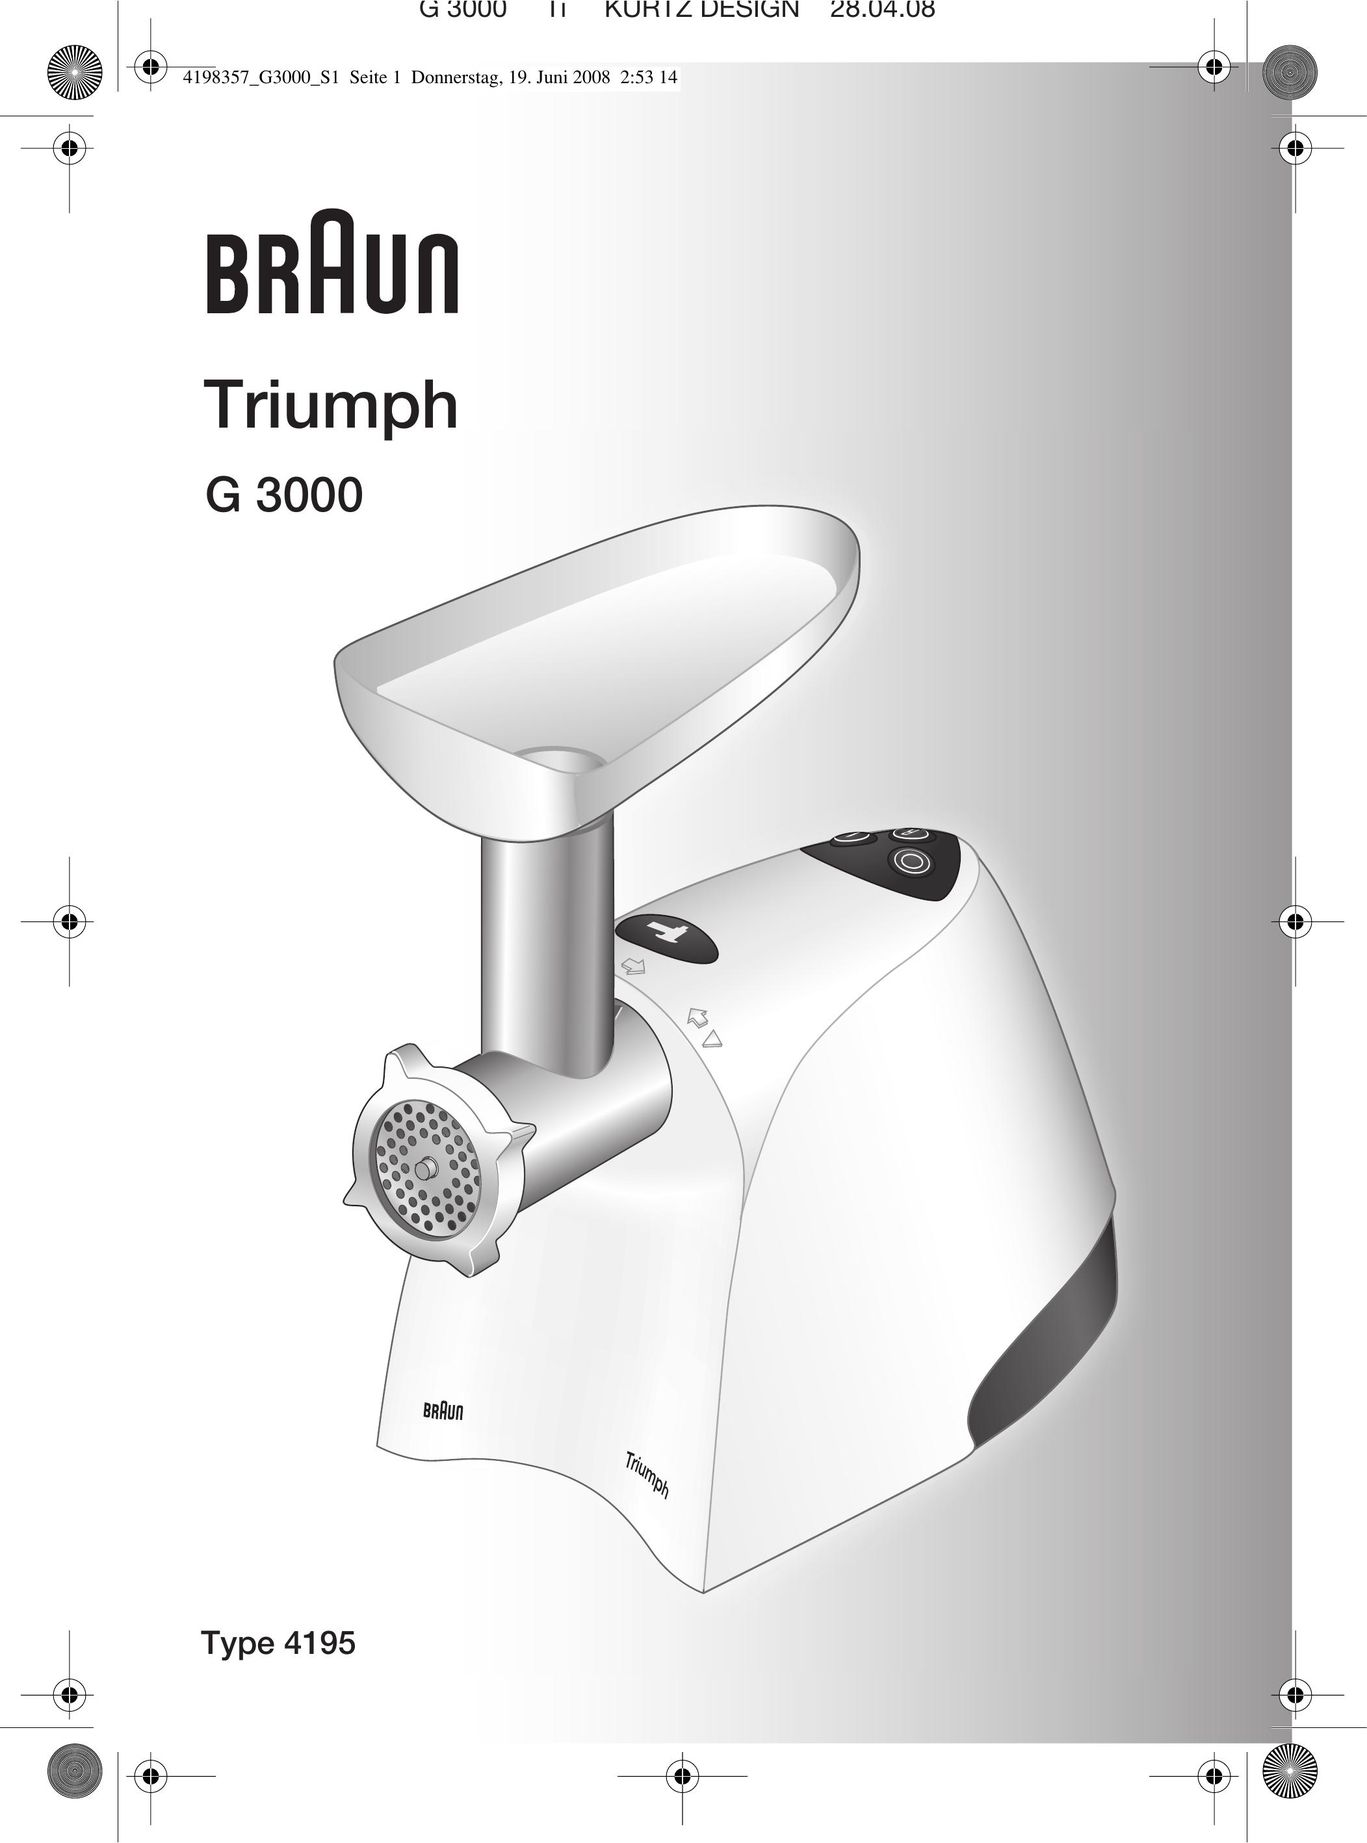 Braun G 3000 Meat Grinder User Manual